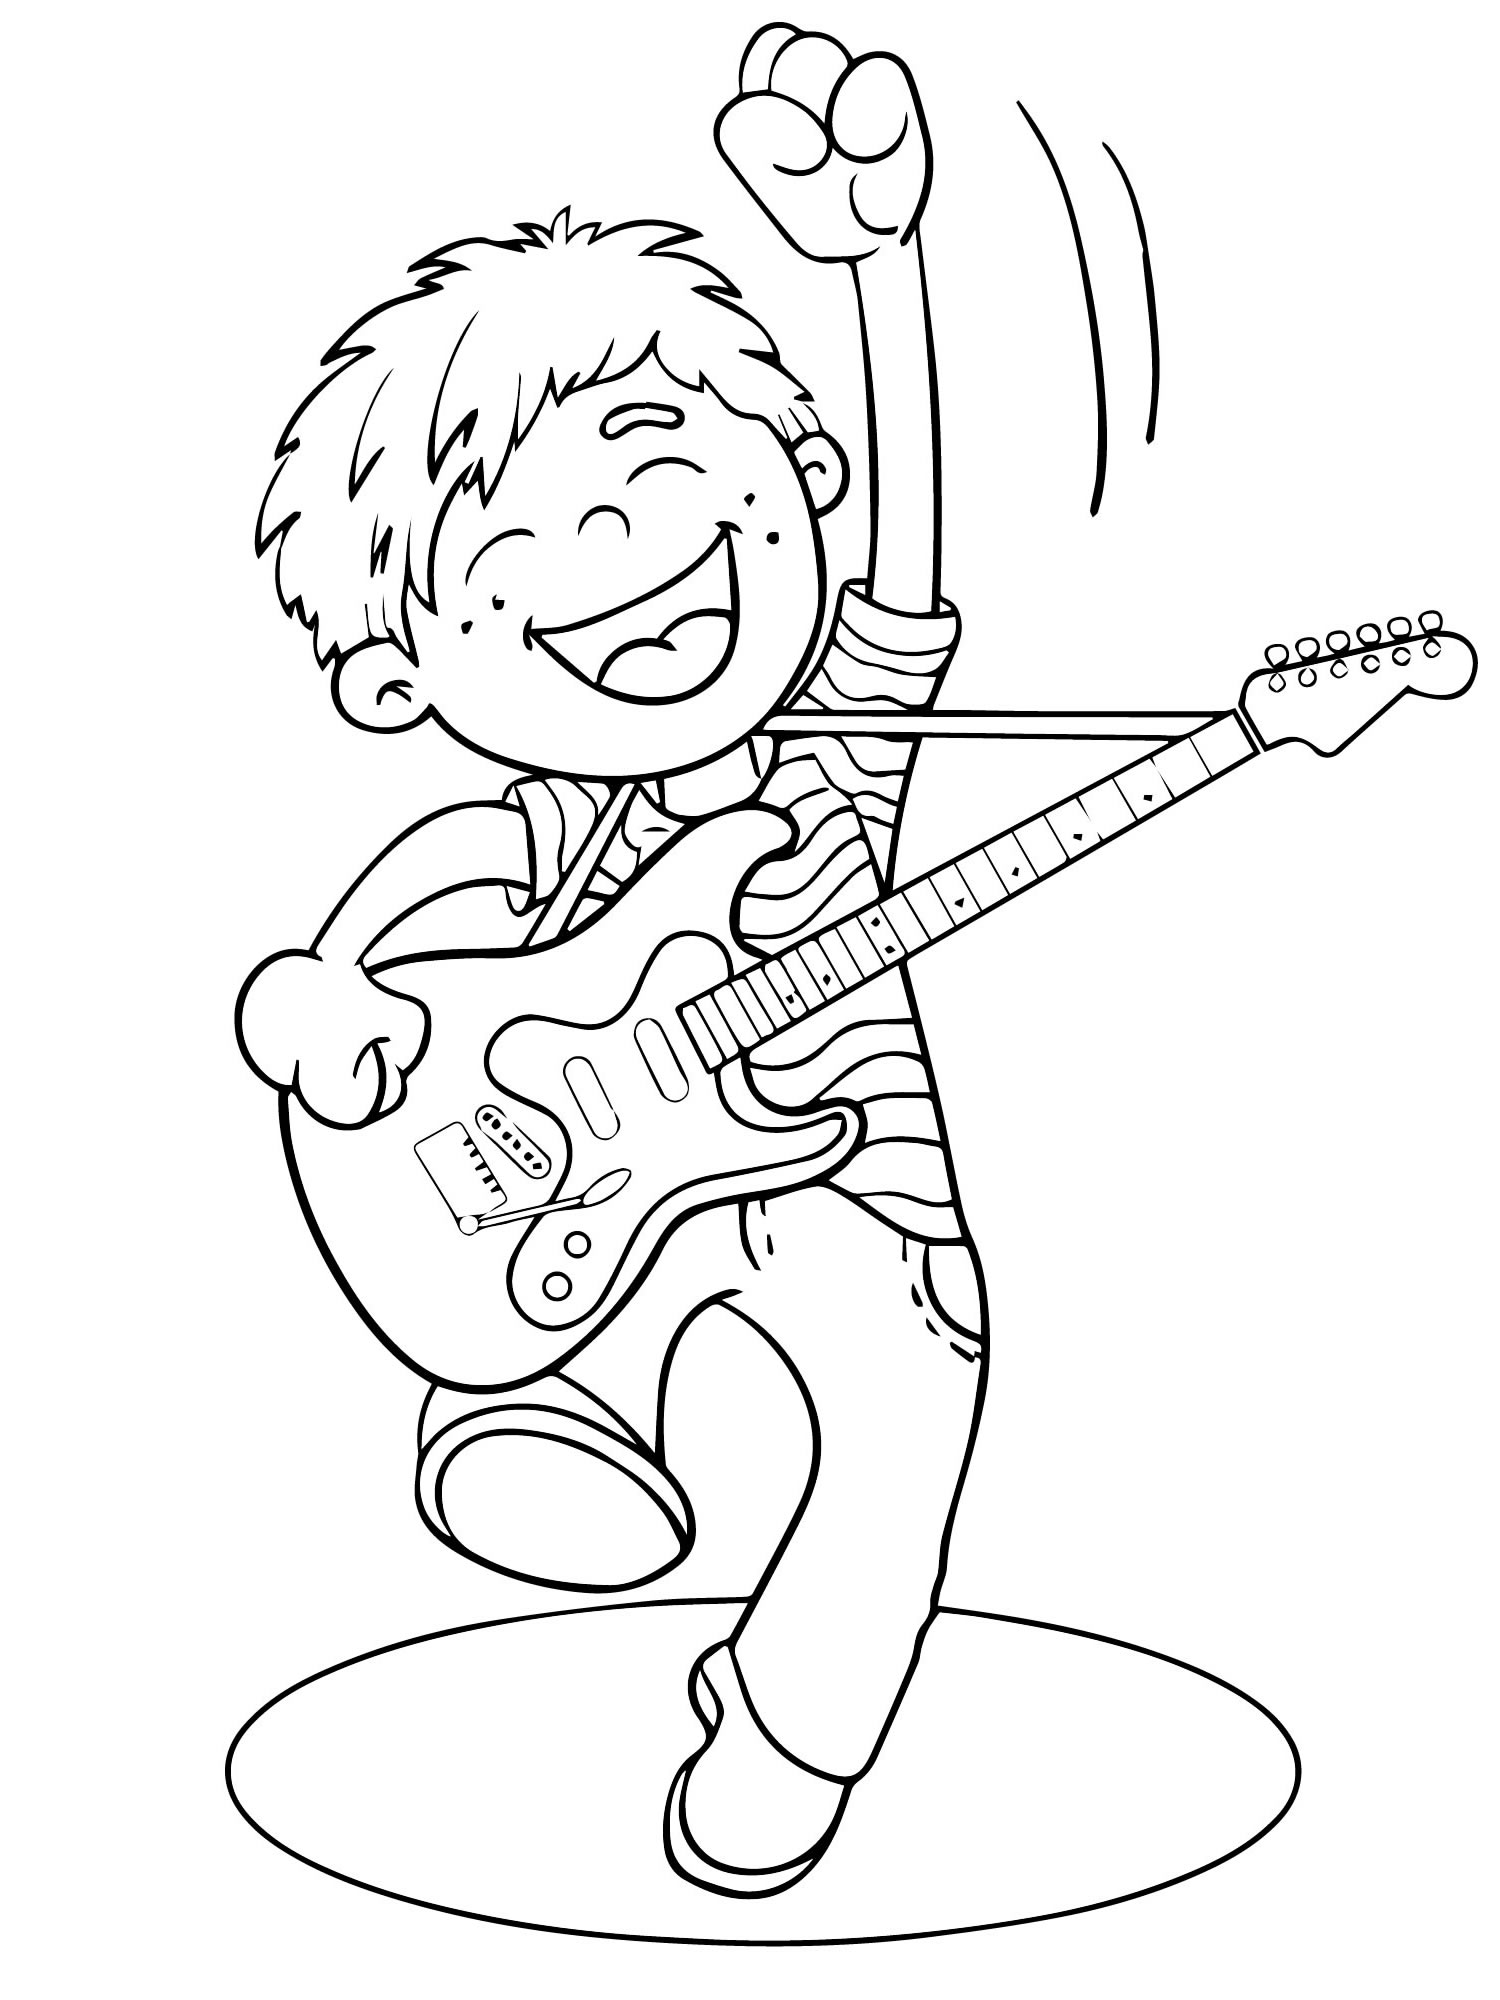 Раскраска мальчик играет на гитаре в своей комнате | Премиум векторы